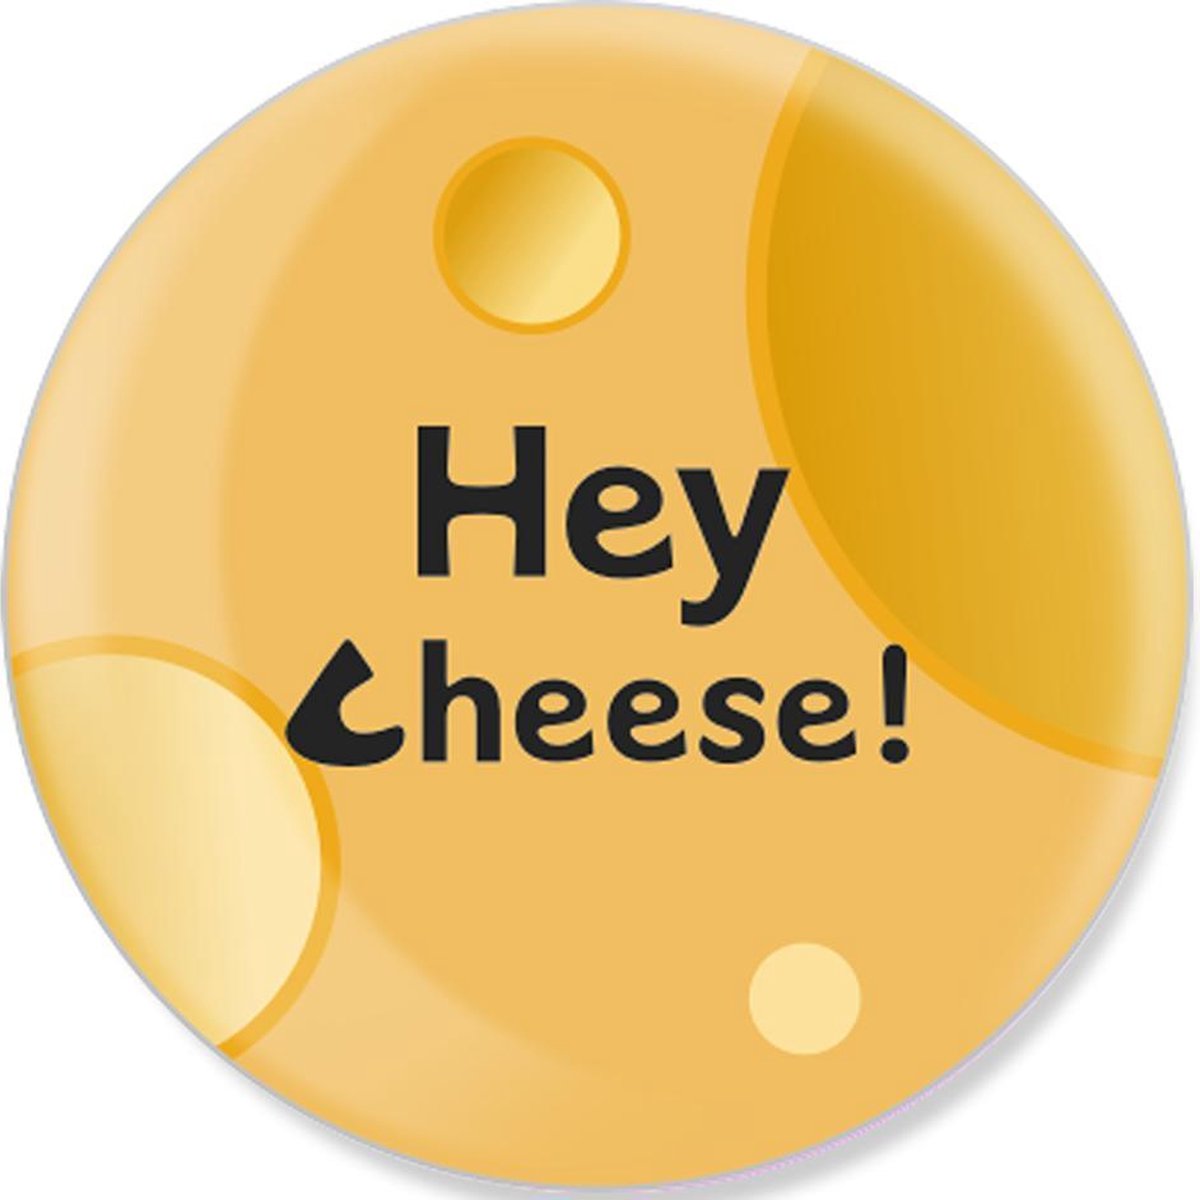 HeyCheese - Cheese - Jouw Socials Delen Met 1 Tap - NFC Tags - Digitaal Visitekaartje - Gadgets - Social Media Marketing - Hoesje - Nummer of Website - Contactloos - Snel